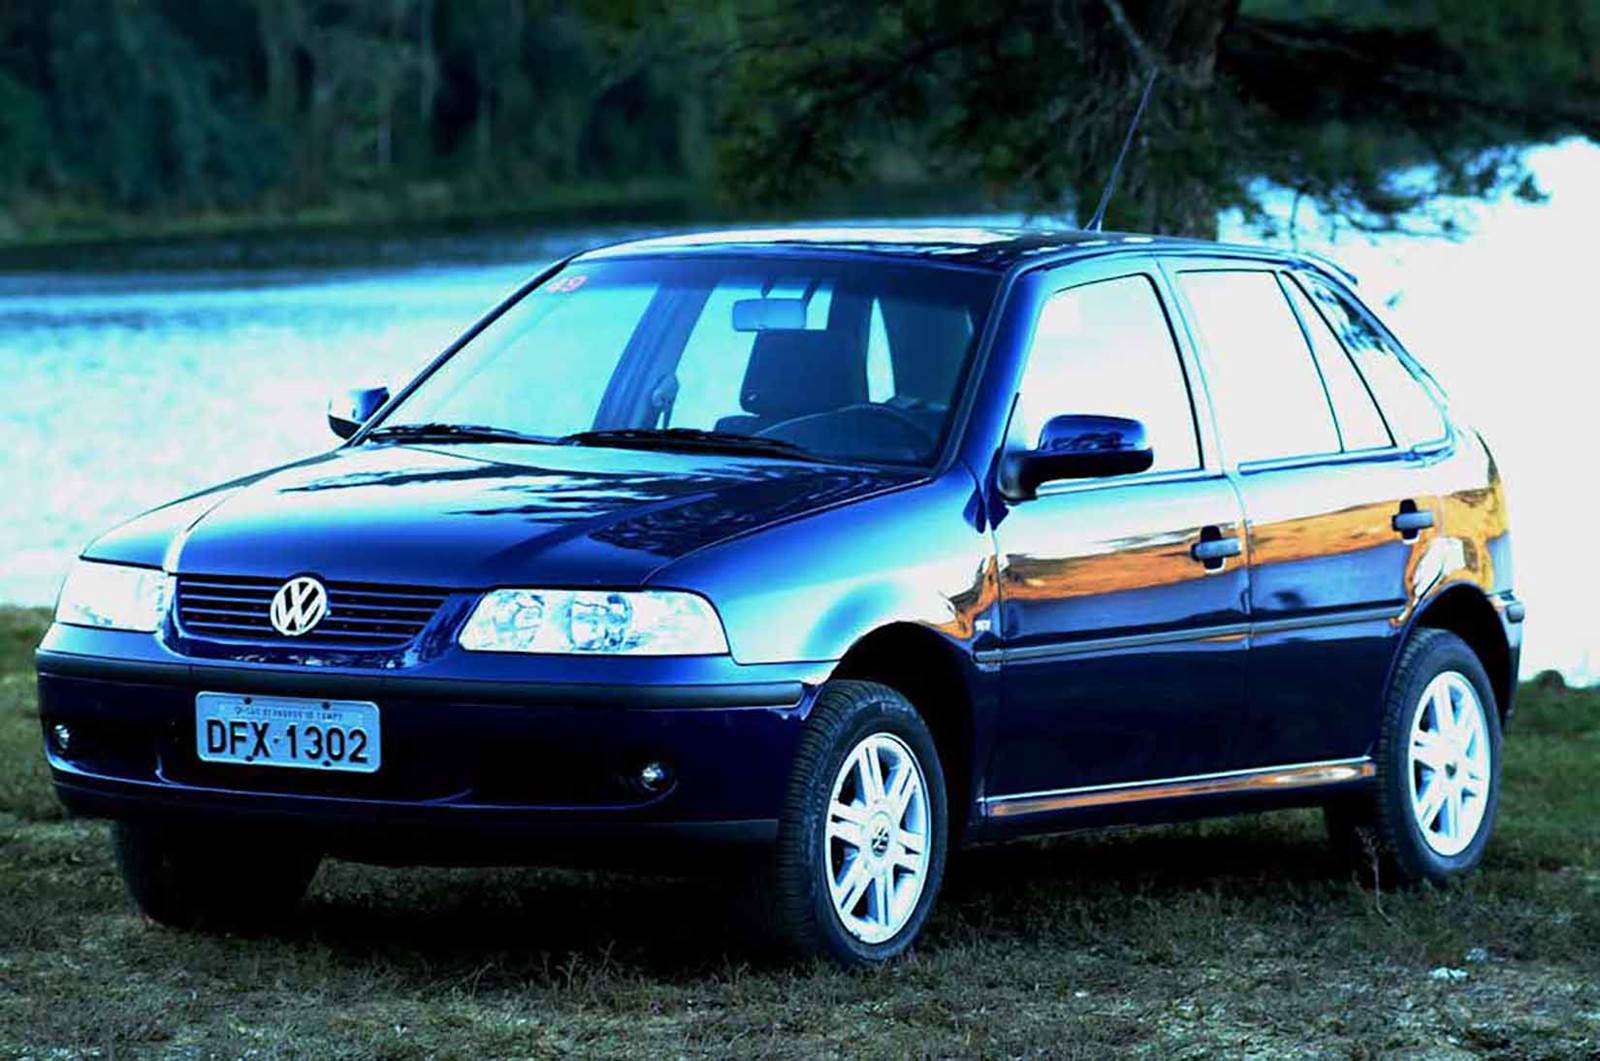 Volkswagen Gol 1.0 16V 2002